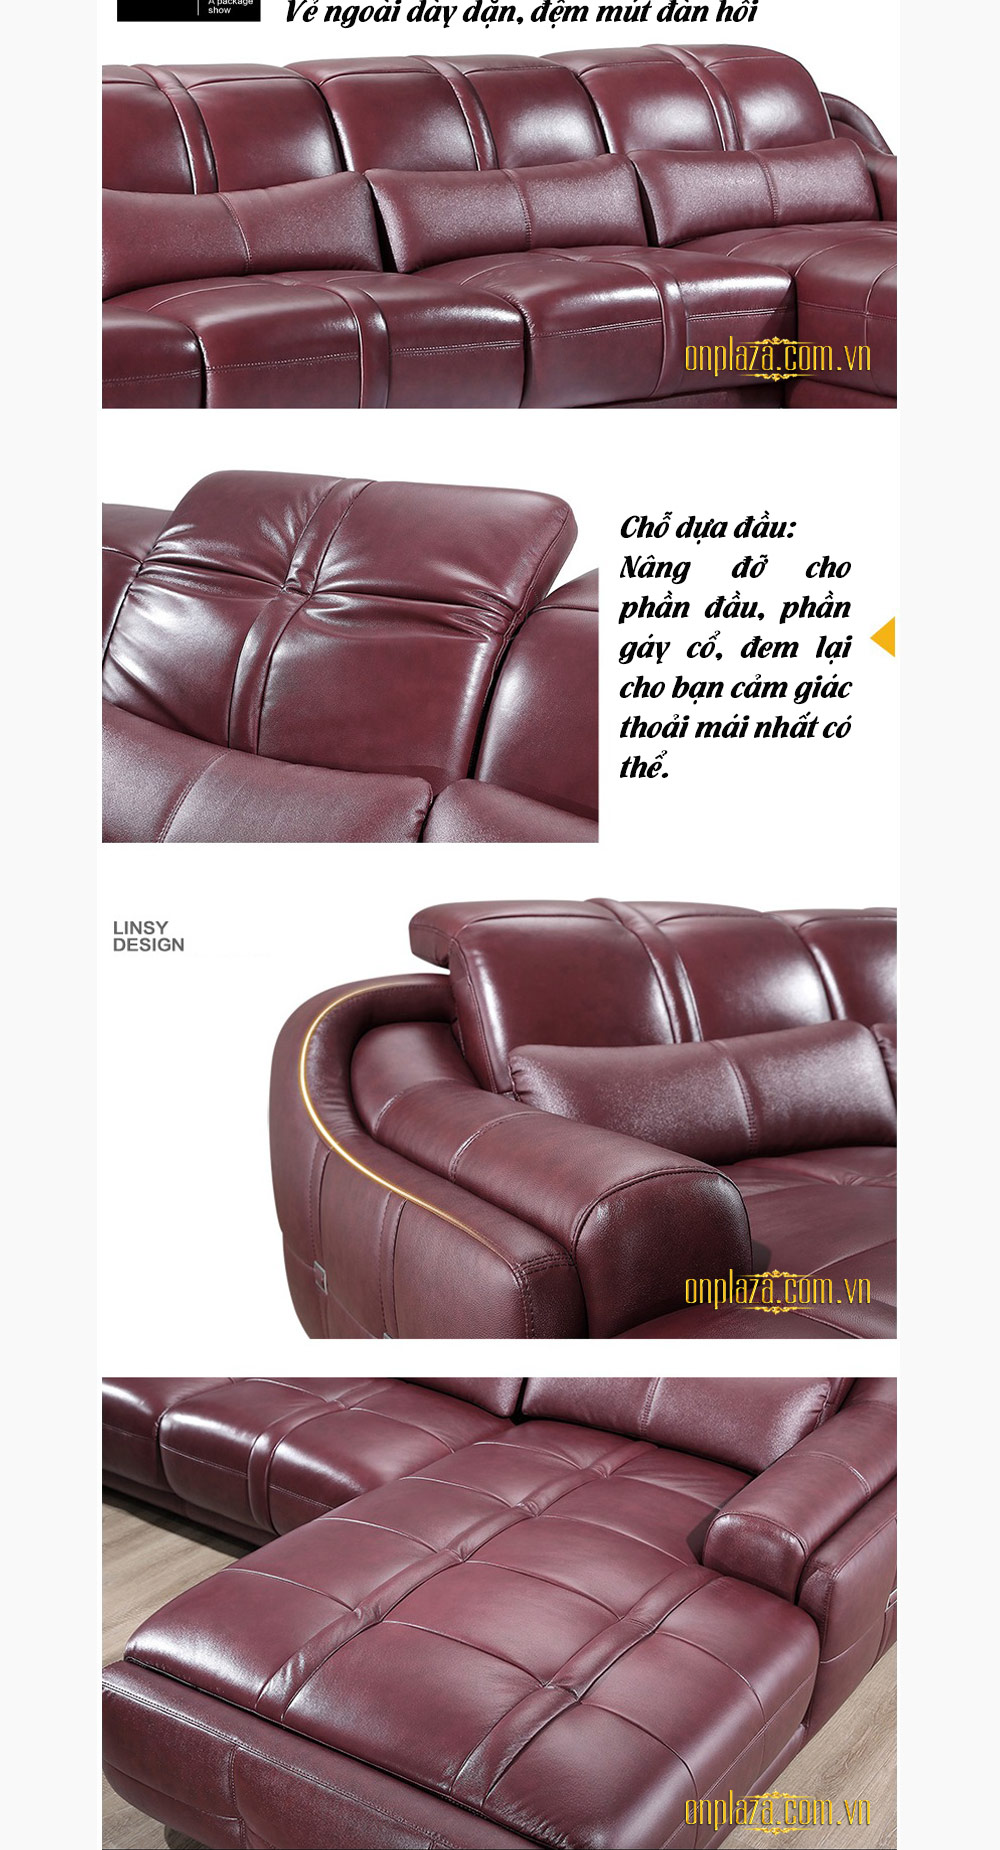 Bộ sofa phòng khách hiện đại SF05